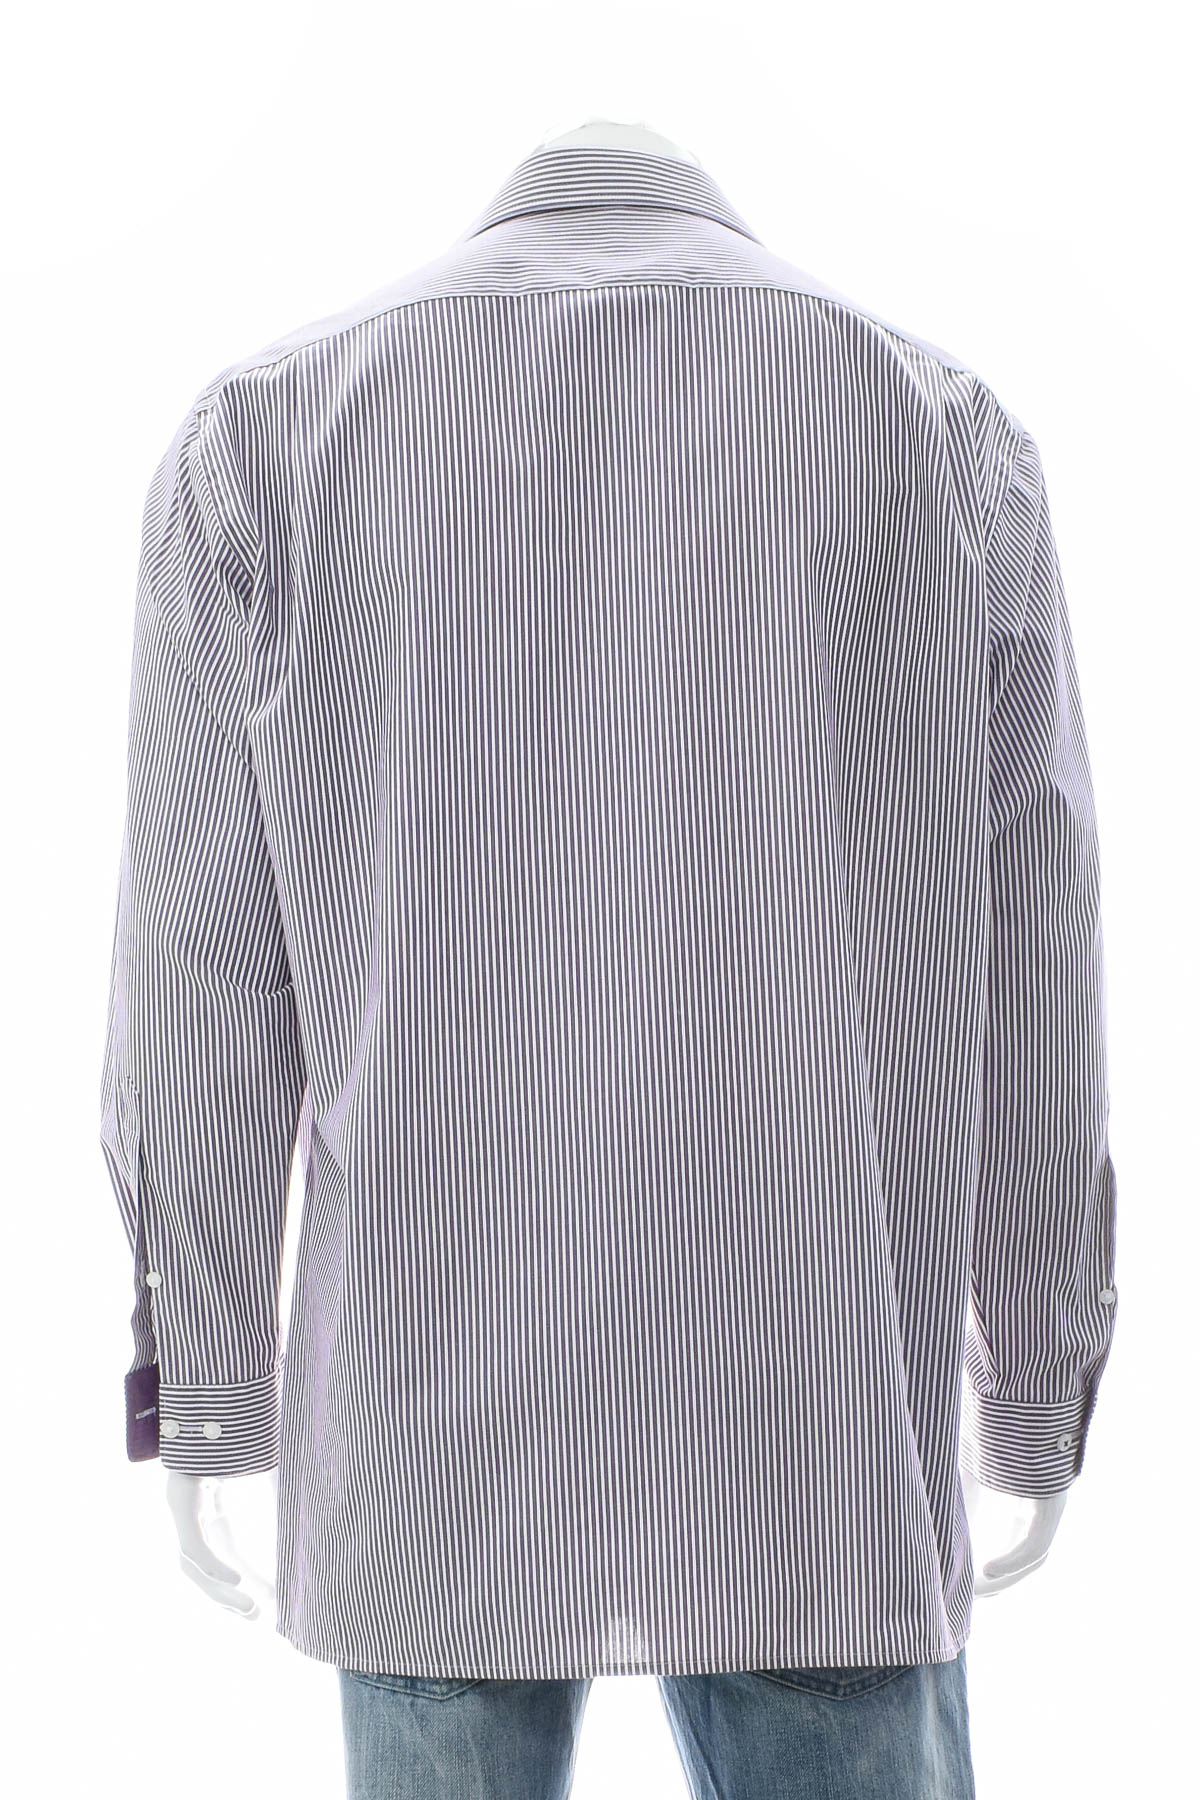 Ανδρικό πουκάμισο - Olymp - 1